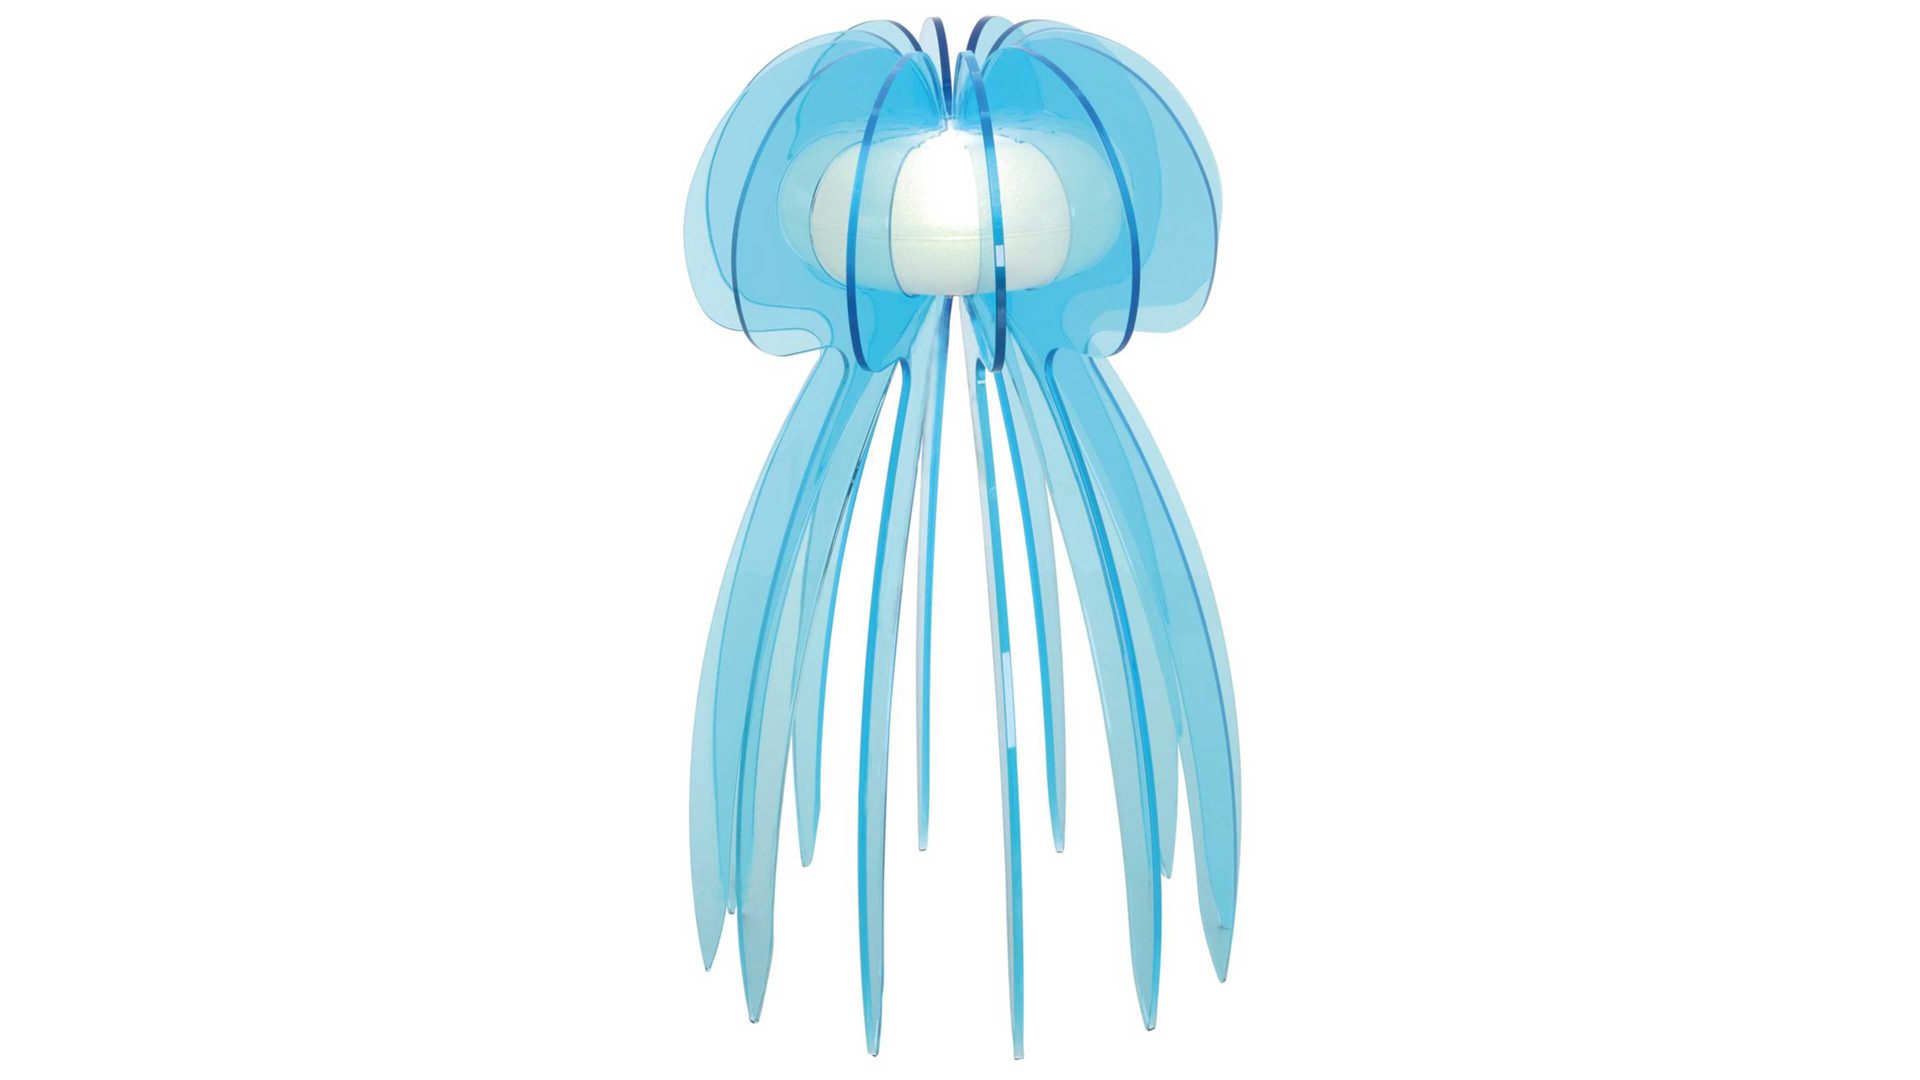 Tischleuchte Näve aus Kunststoff in Blau näve Tischleuchte Jellyfish türkises Acrylglas – Höhe ca. 30 cm